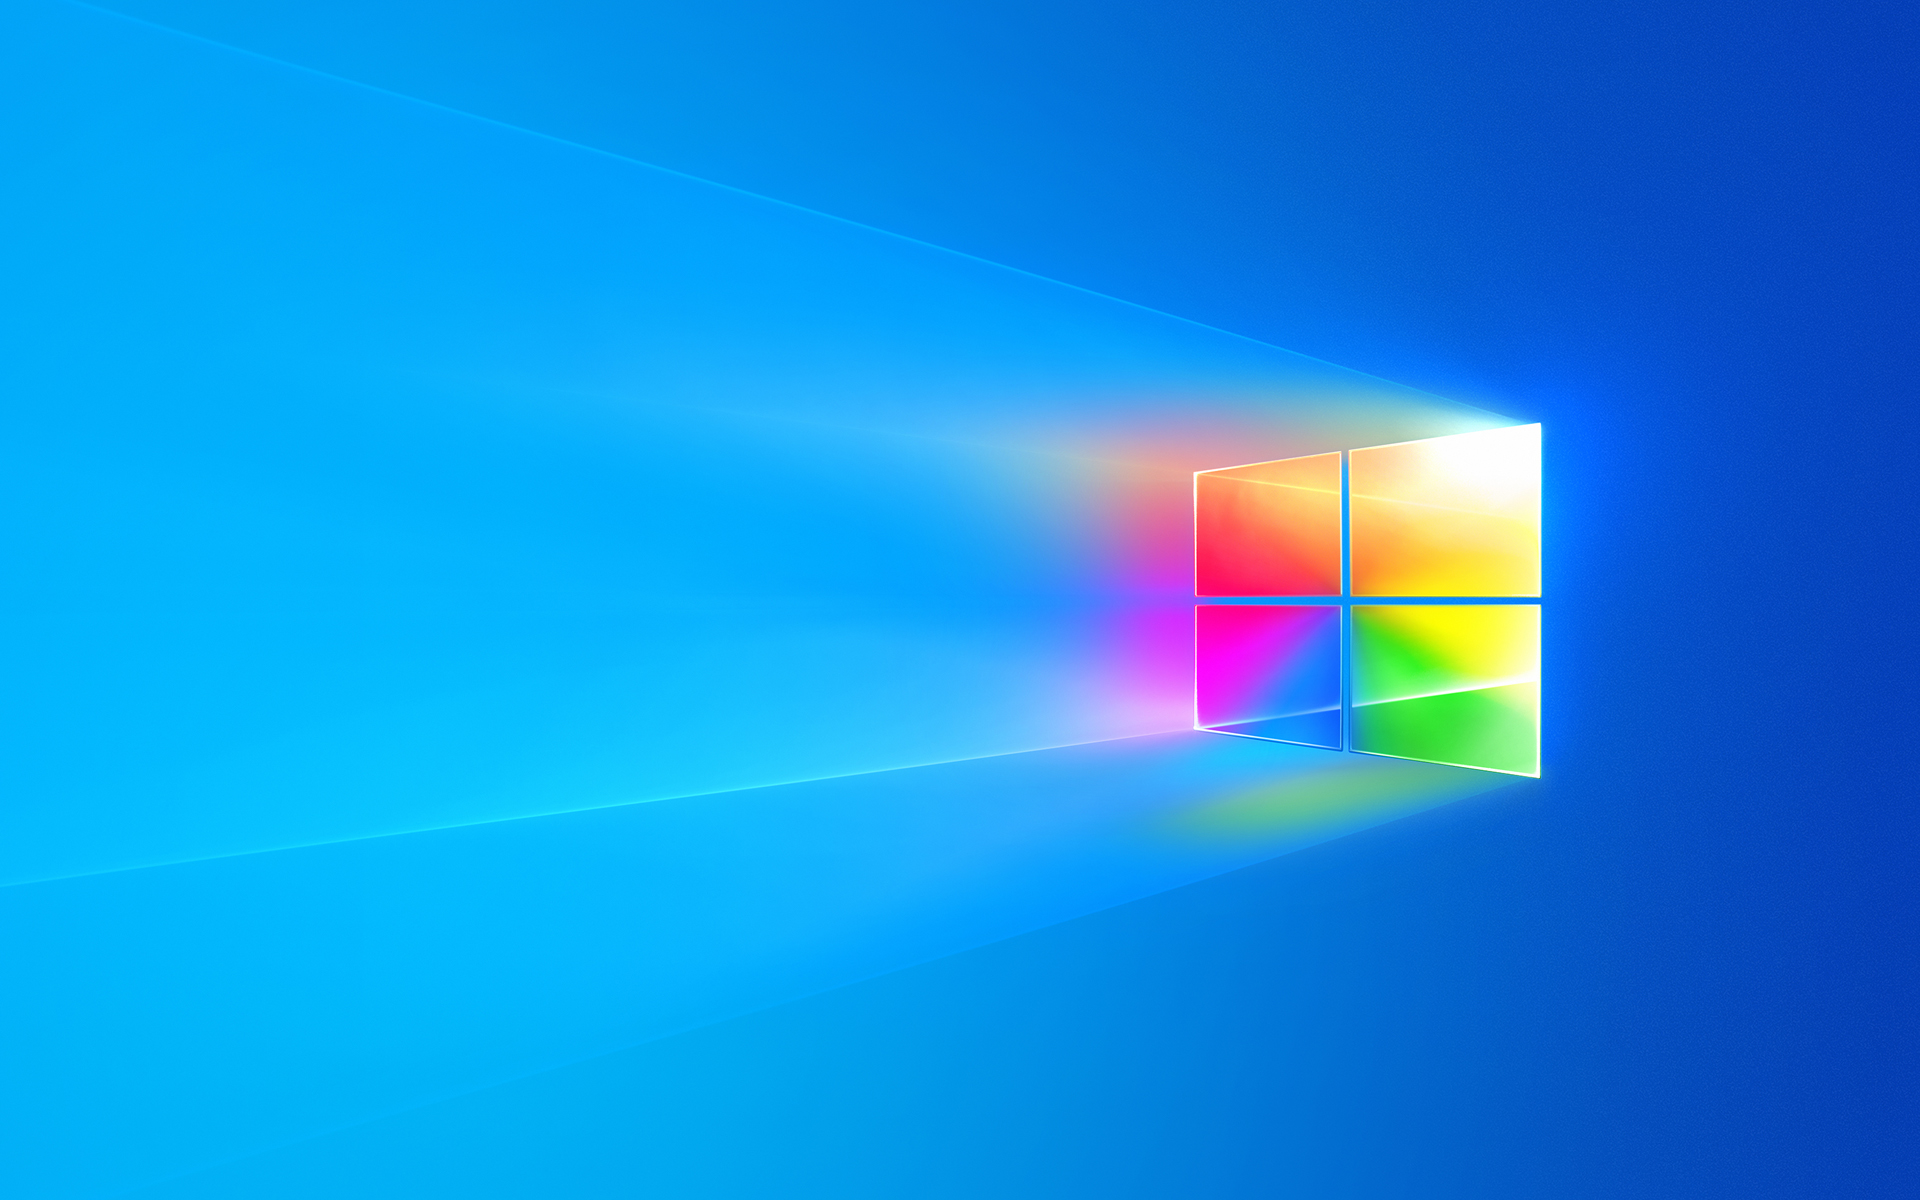 Mời anh em tải về bộ hình nền "cửa sổ" đã được biến tấu của Windows 10 phần 2